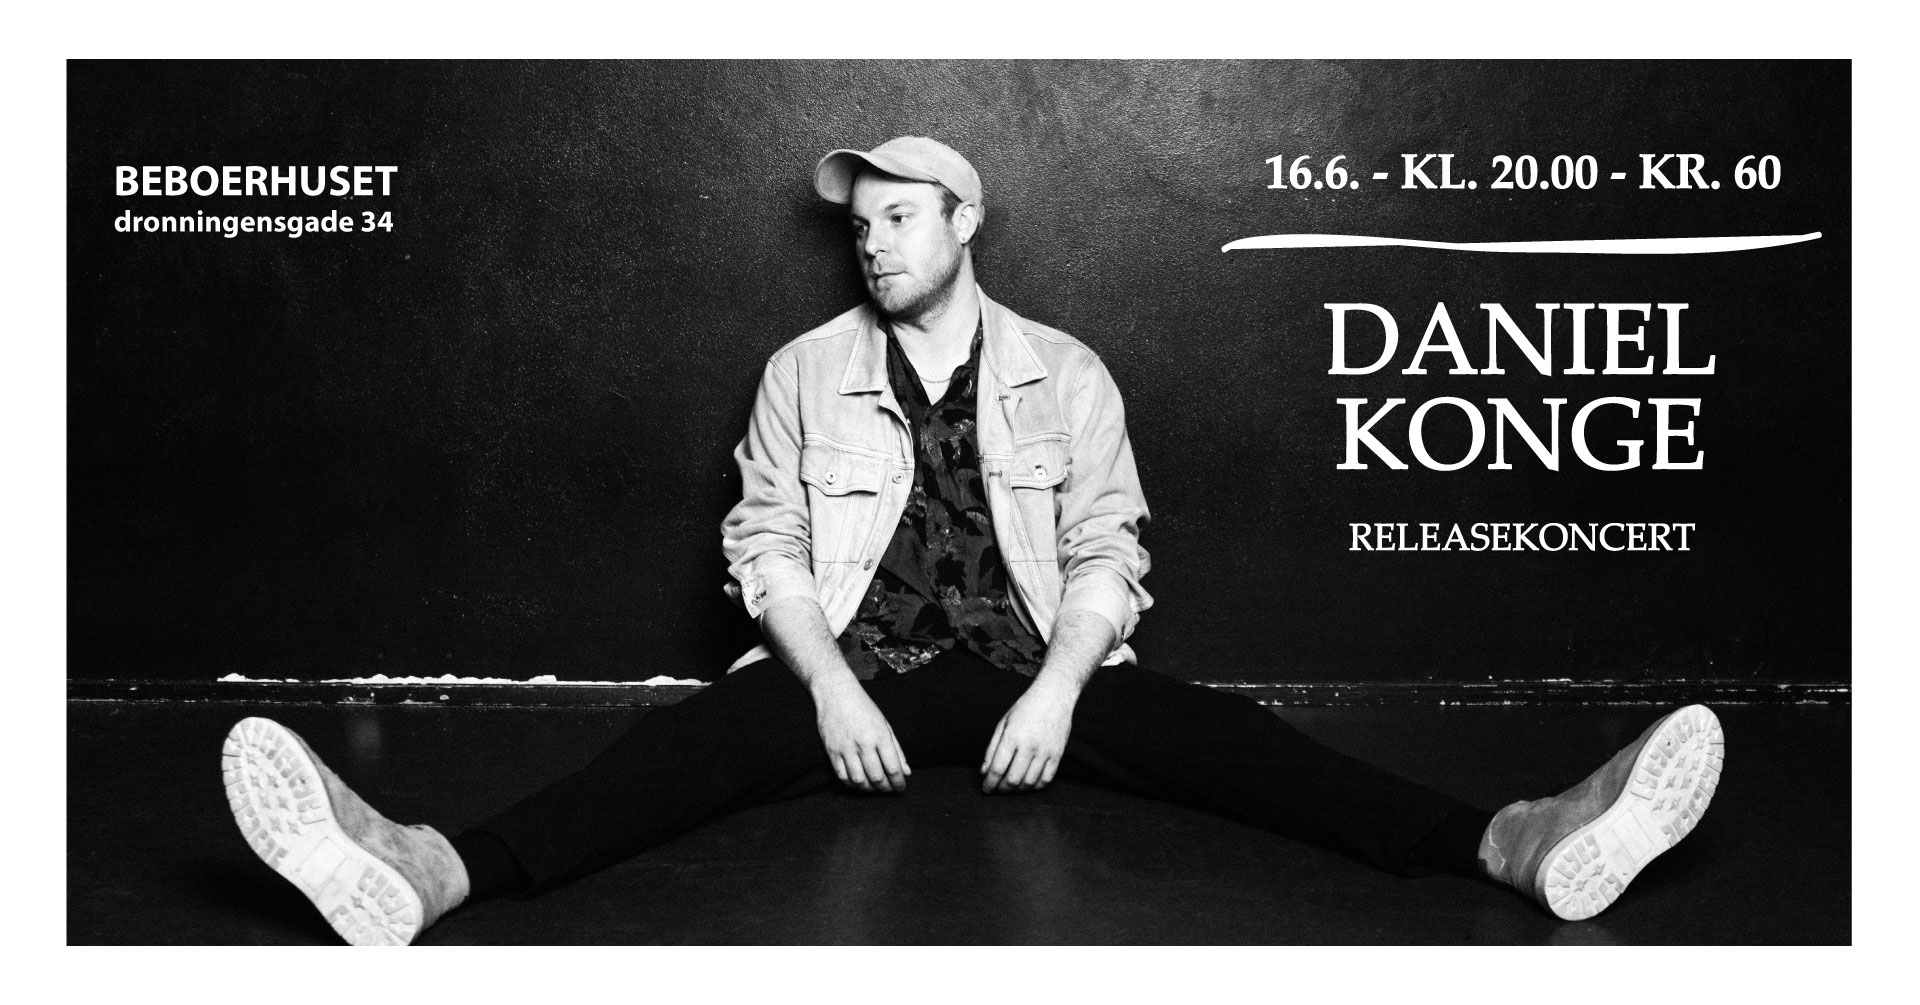 Daniel Konge – releasekoncert